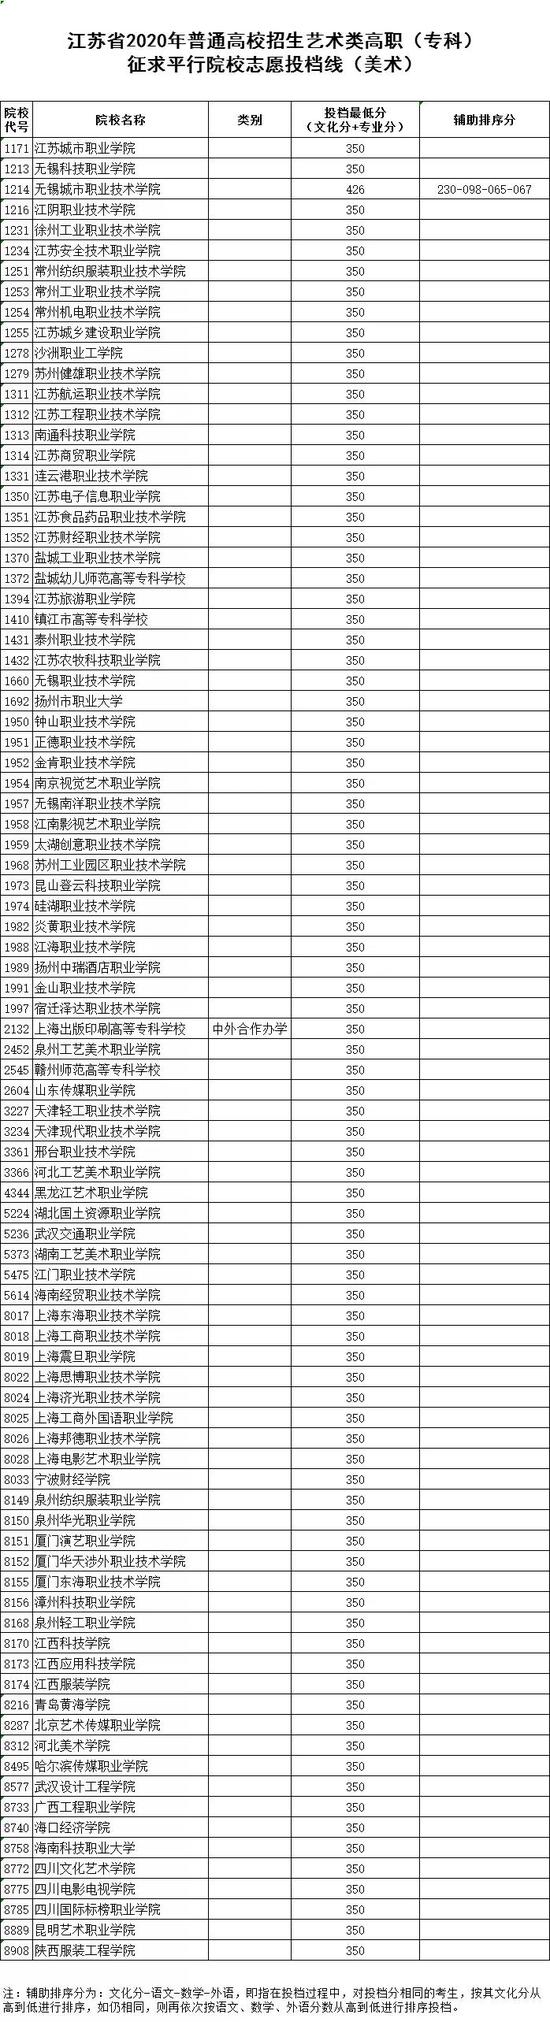 2020江苏体艺类高职(专科)征求平行院校志愿投档线2